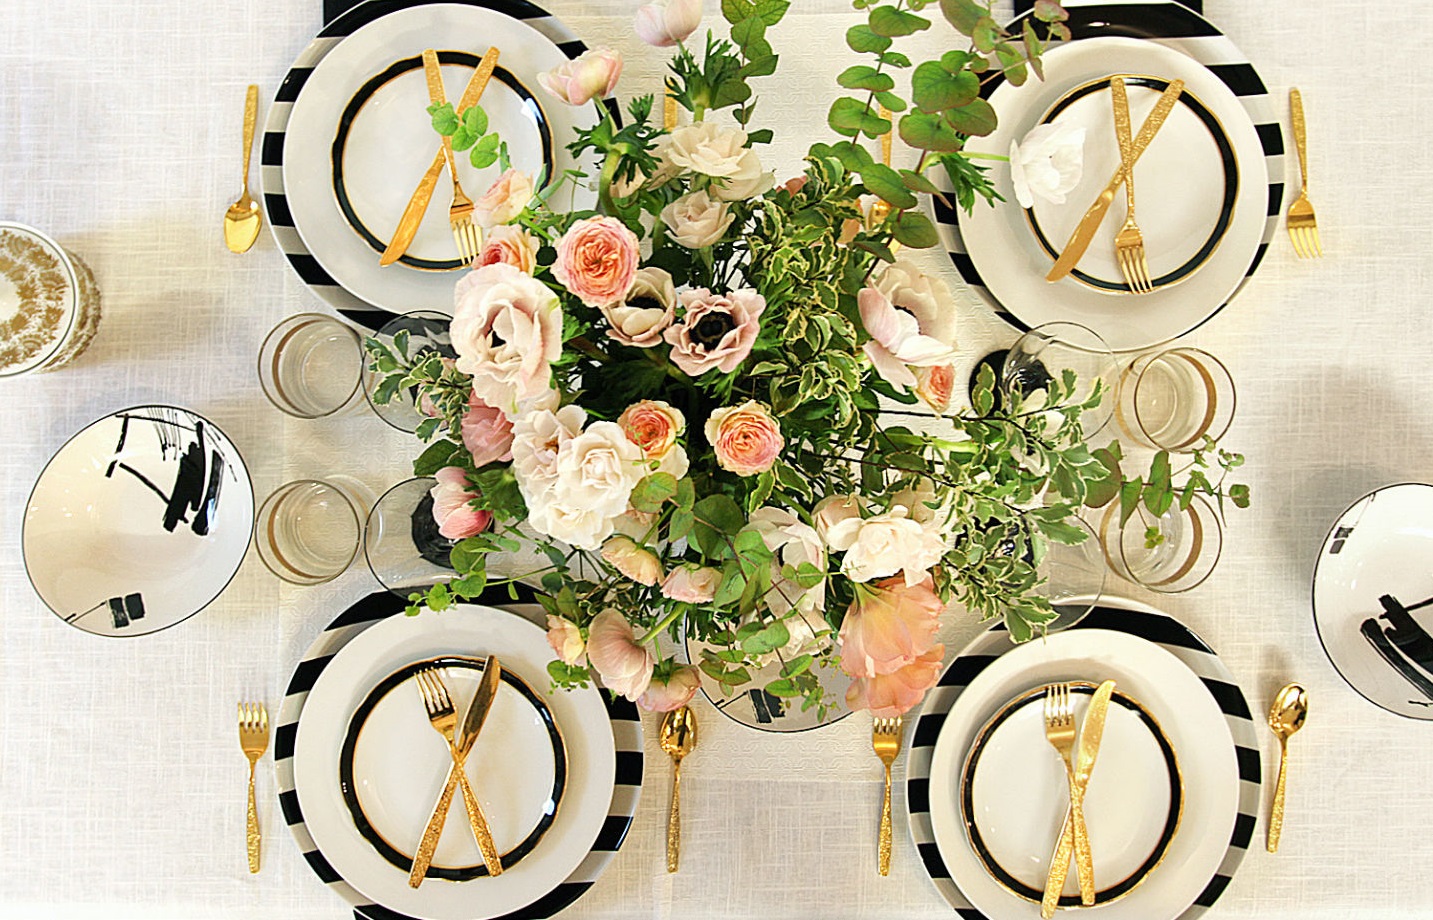 9. Sự kết hợp các gam màu nhẹ nhàng của những bông hoa màu hồng phớt và màu trắng với sắc xanh của lá trên nền kẻ sọc của những chiếc đĩa khiến bàn tiệc cho ngày lễ tình nhân thêm phần ngọt ngào, tinh khiết.